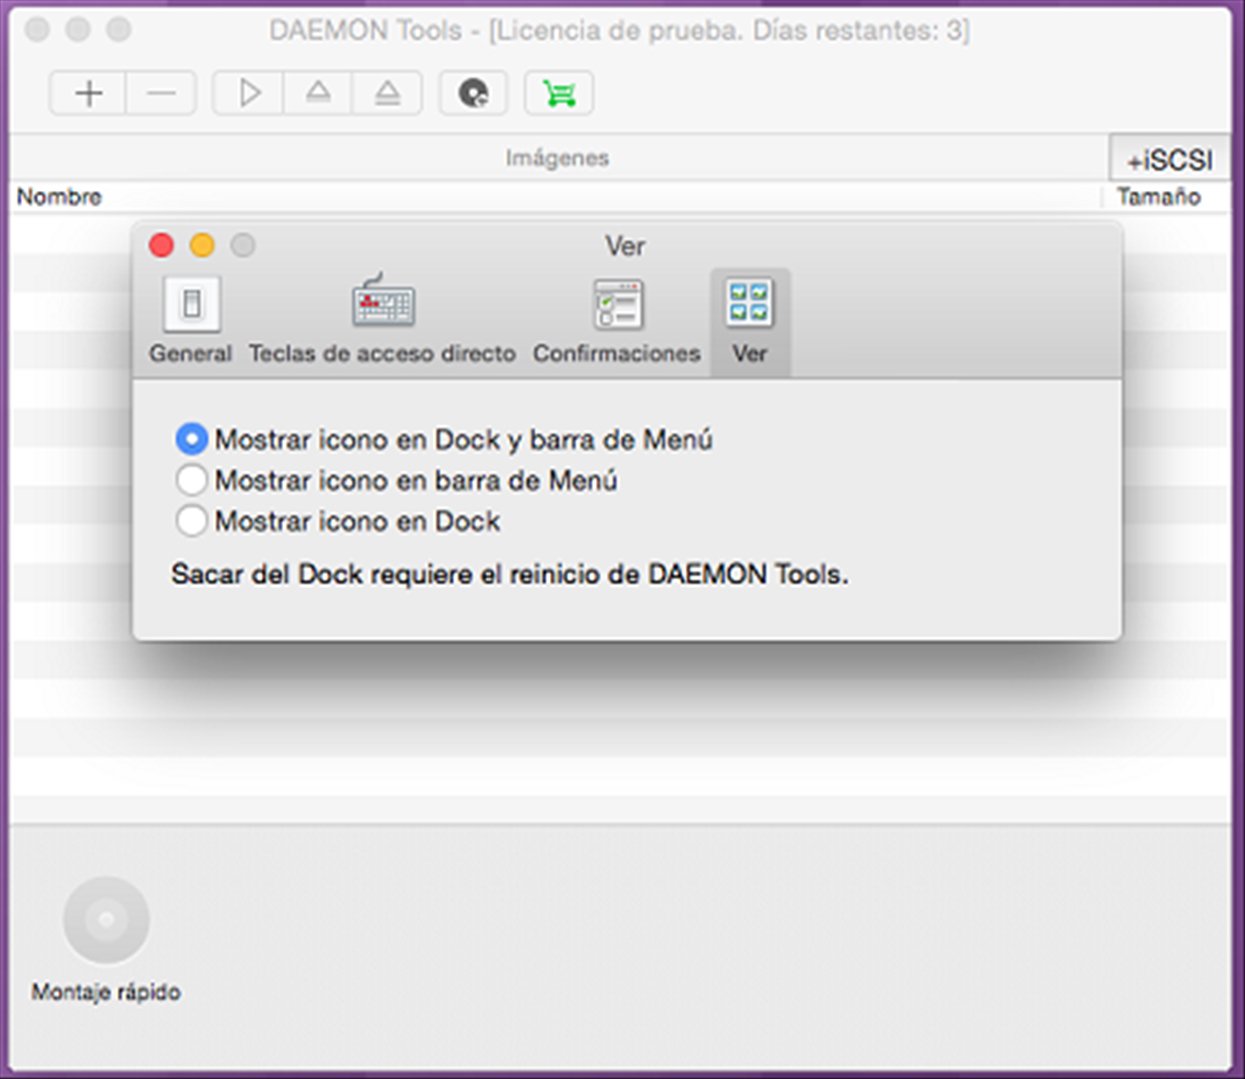 Download Daemon Tool For Mac